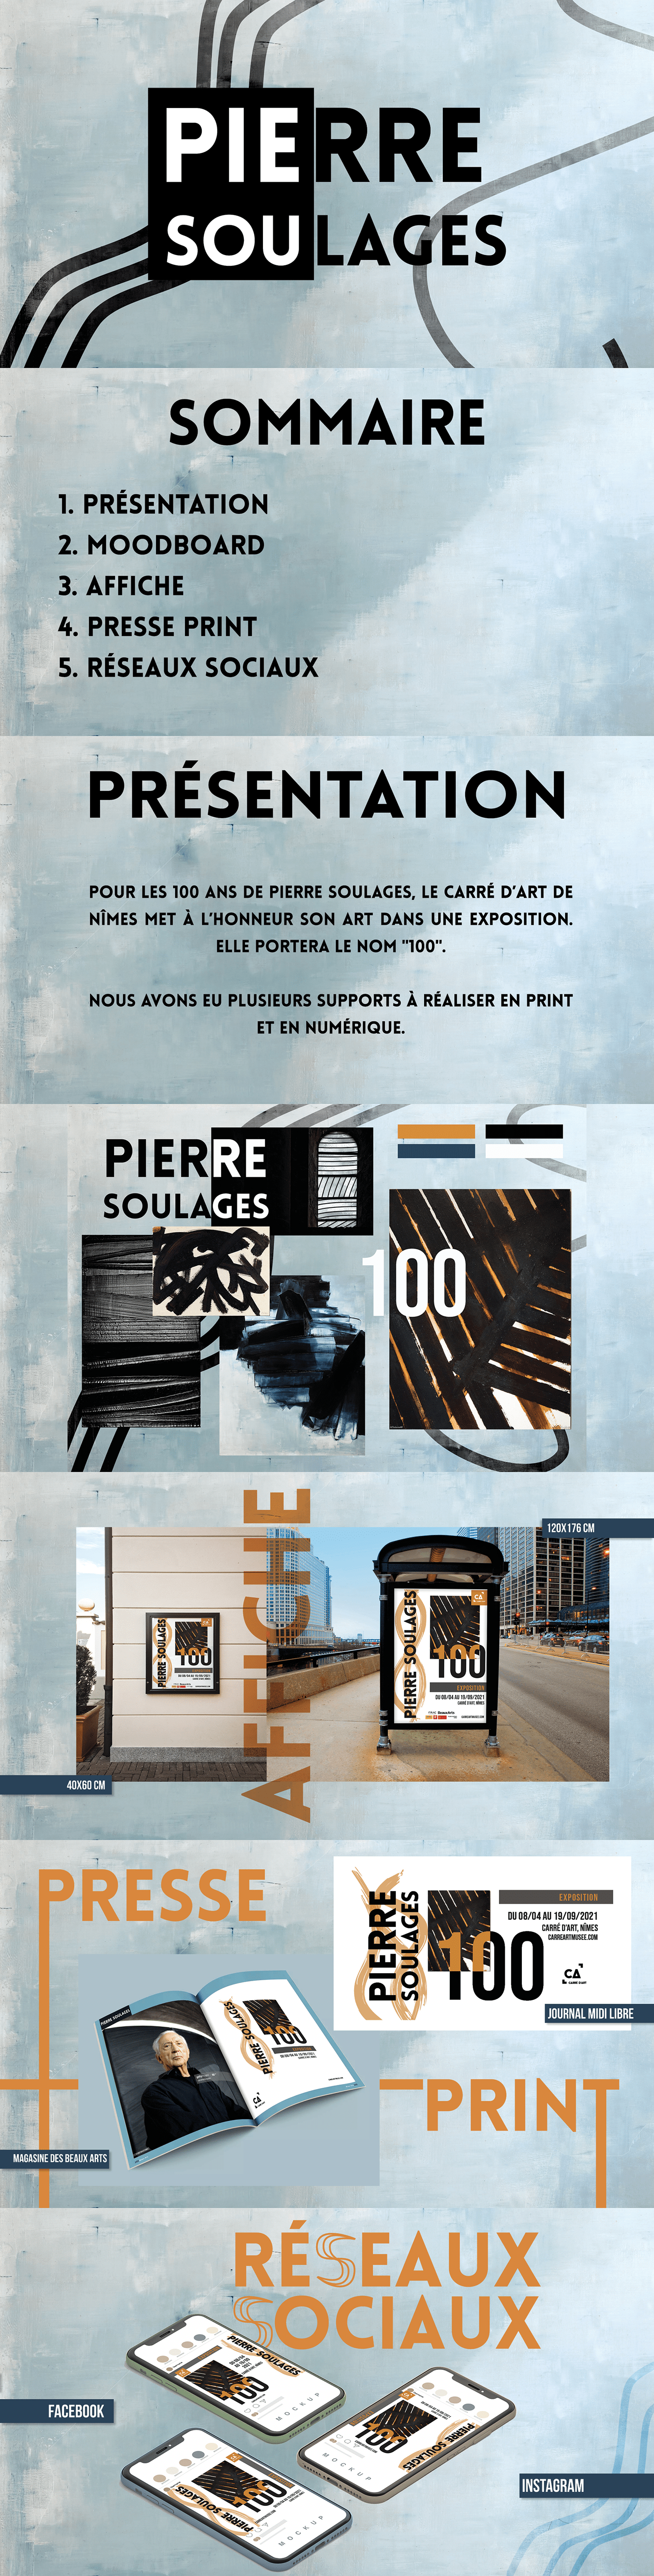 adobe design designer graphics Pierre Soulages poster print Social media post